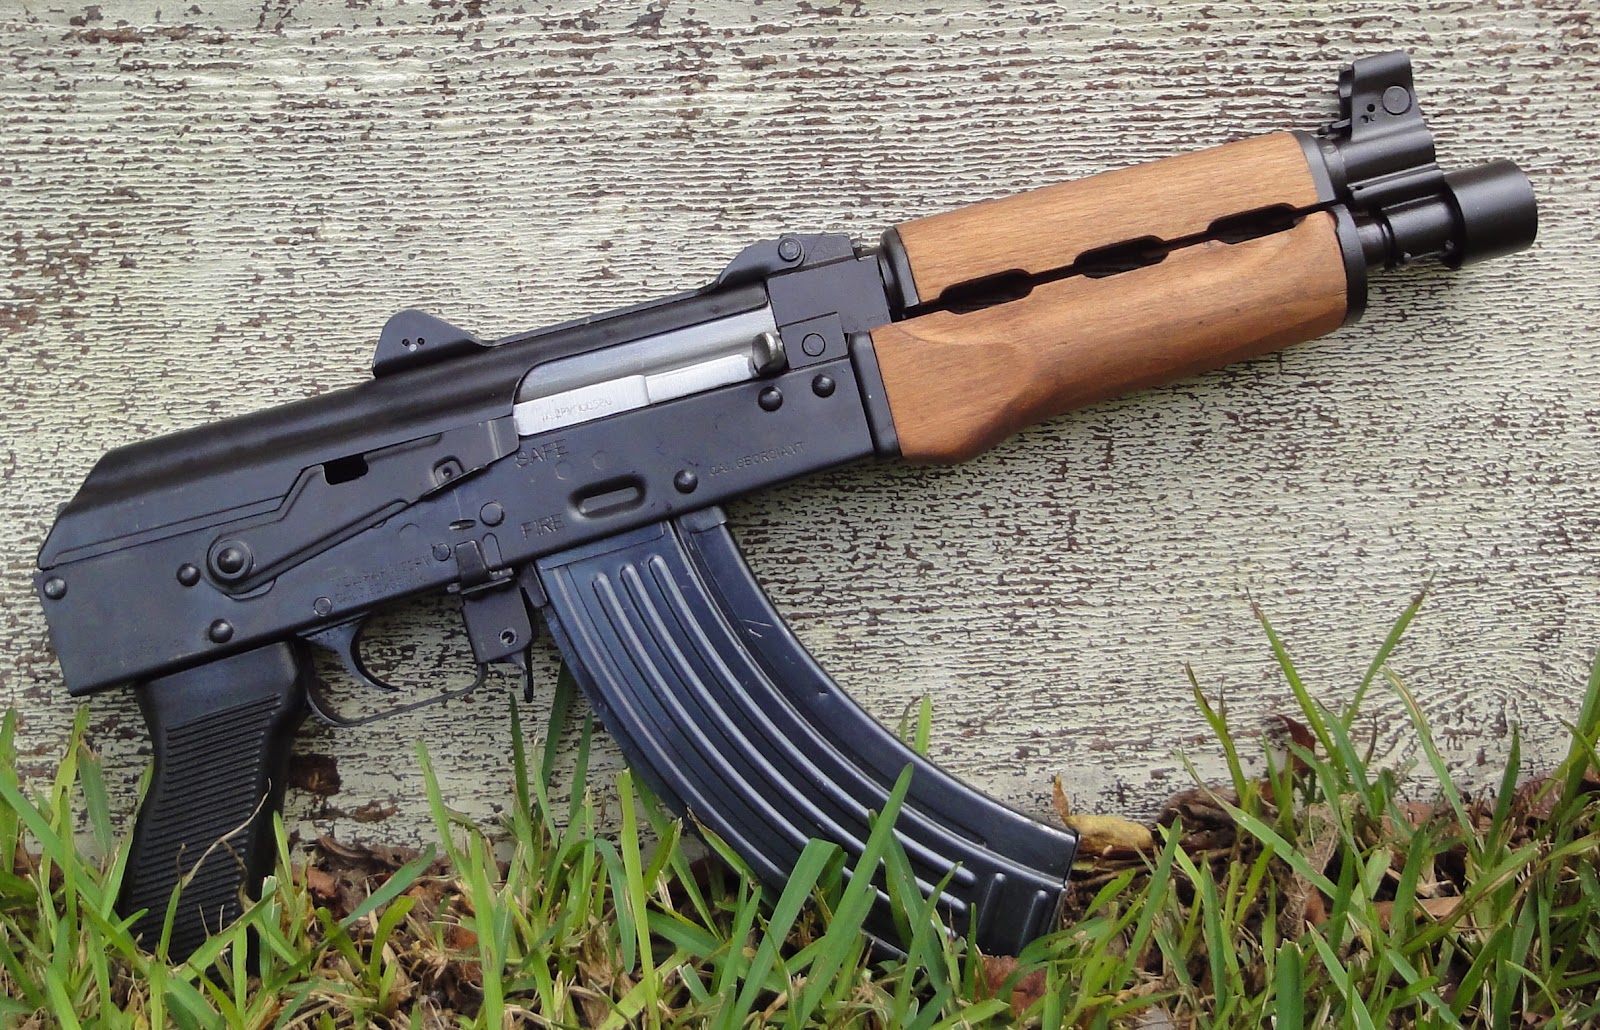 The Zastava PAP M92 pistol has hit the US market. 